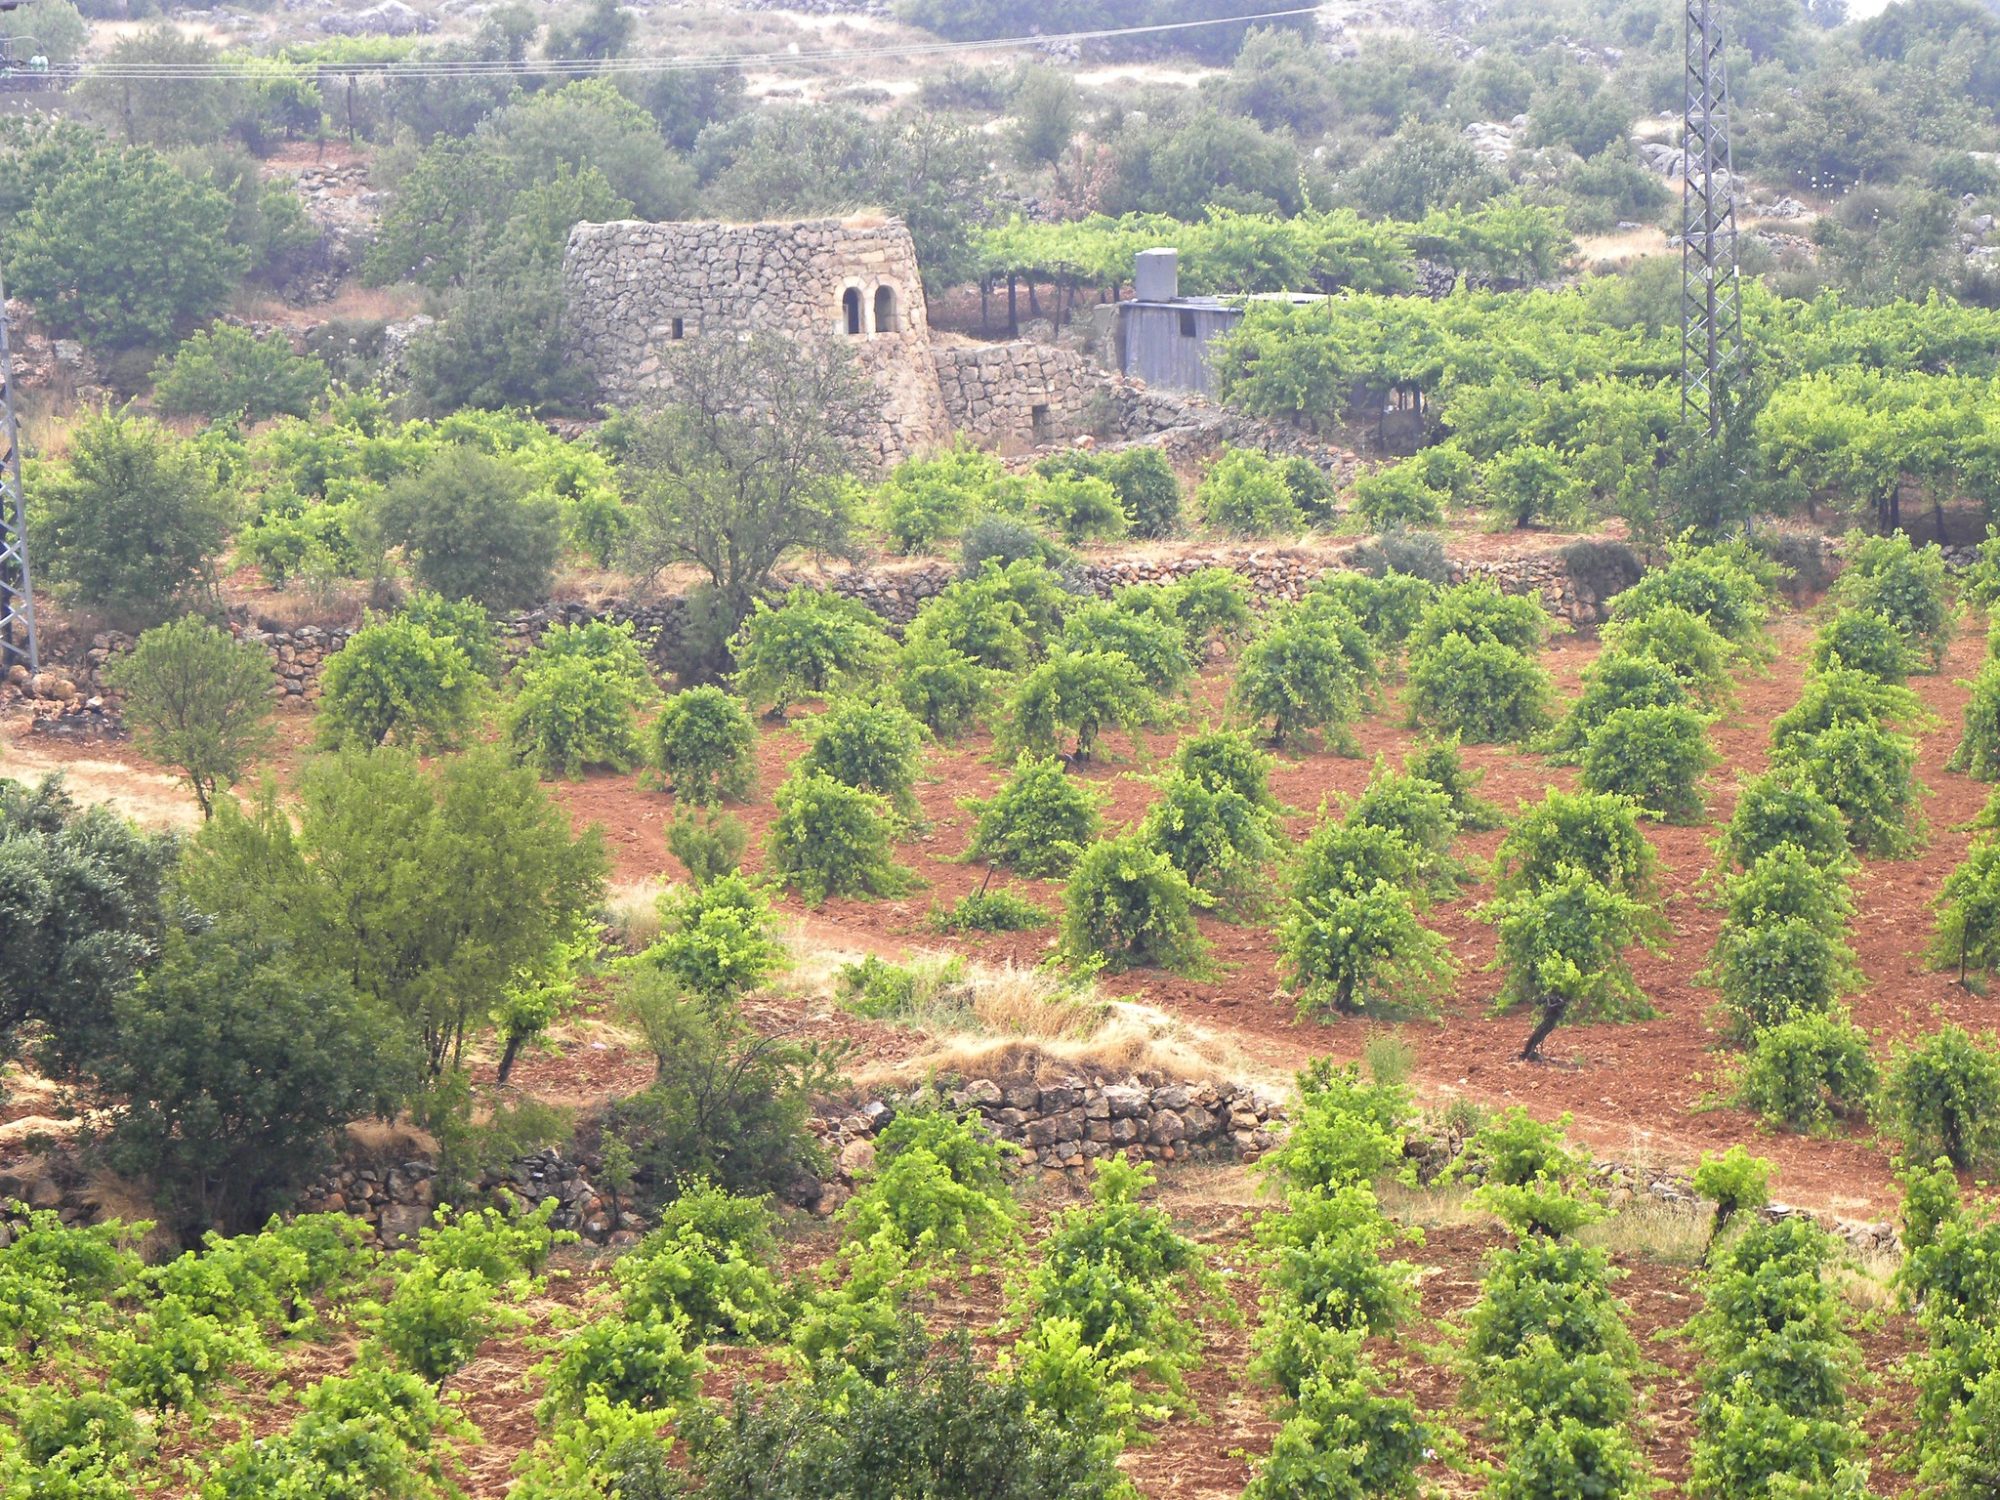 Watchtower in vineyard